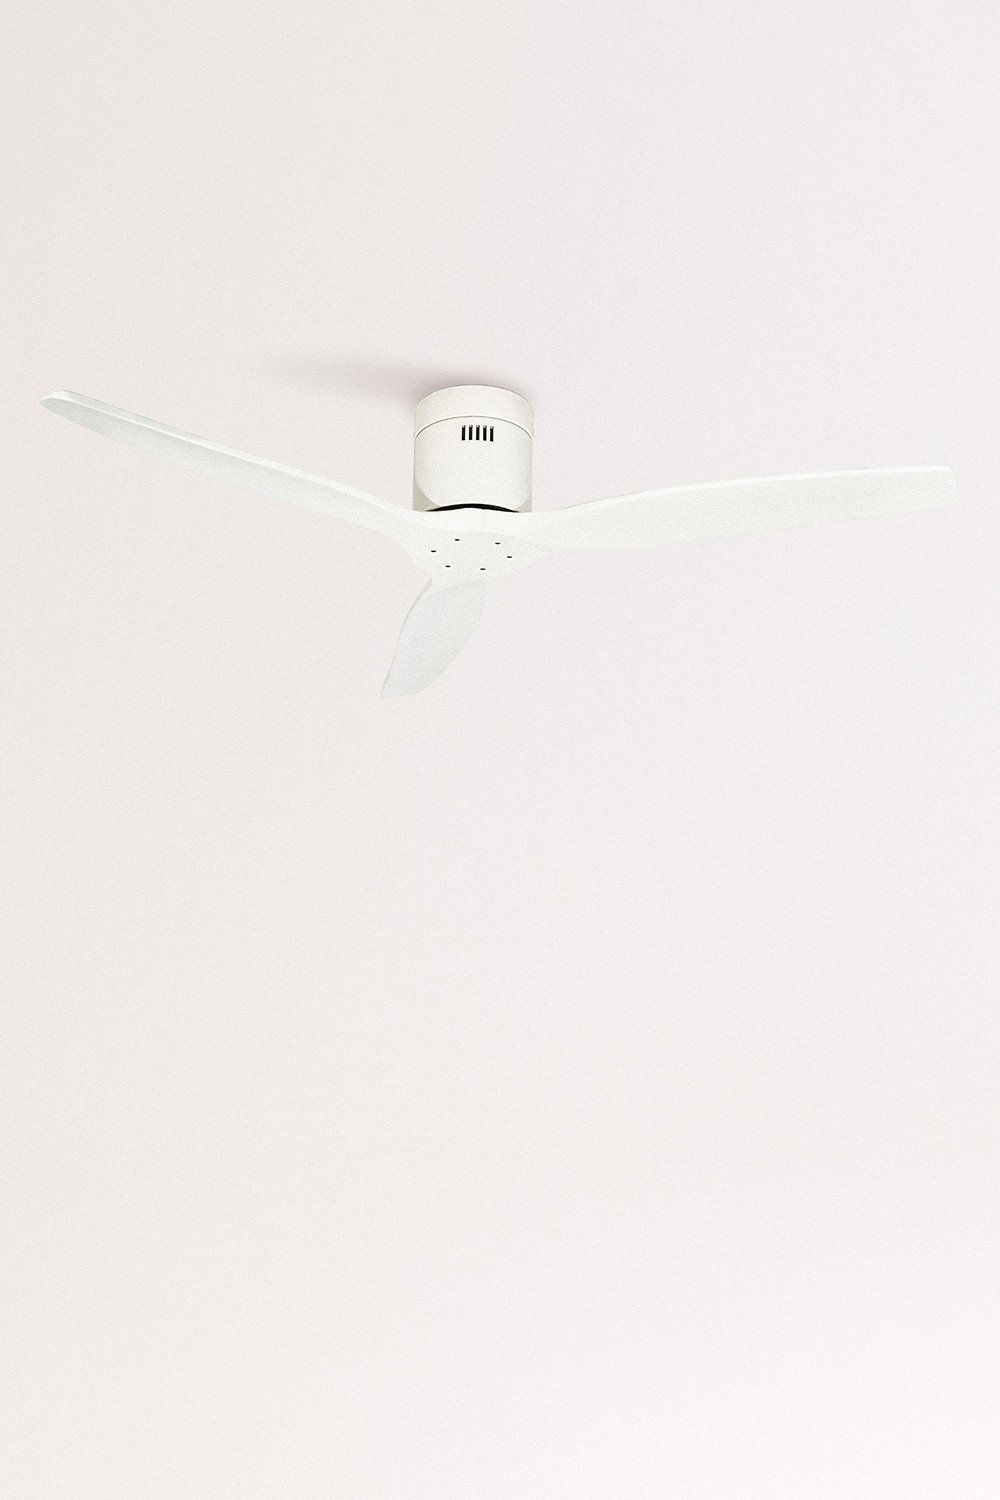 CREATE - WINDCALM DC - Ultrastille plafondventilator met winter-zomerfunctie, galerij beeld 1